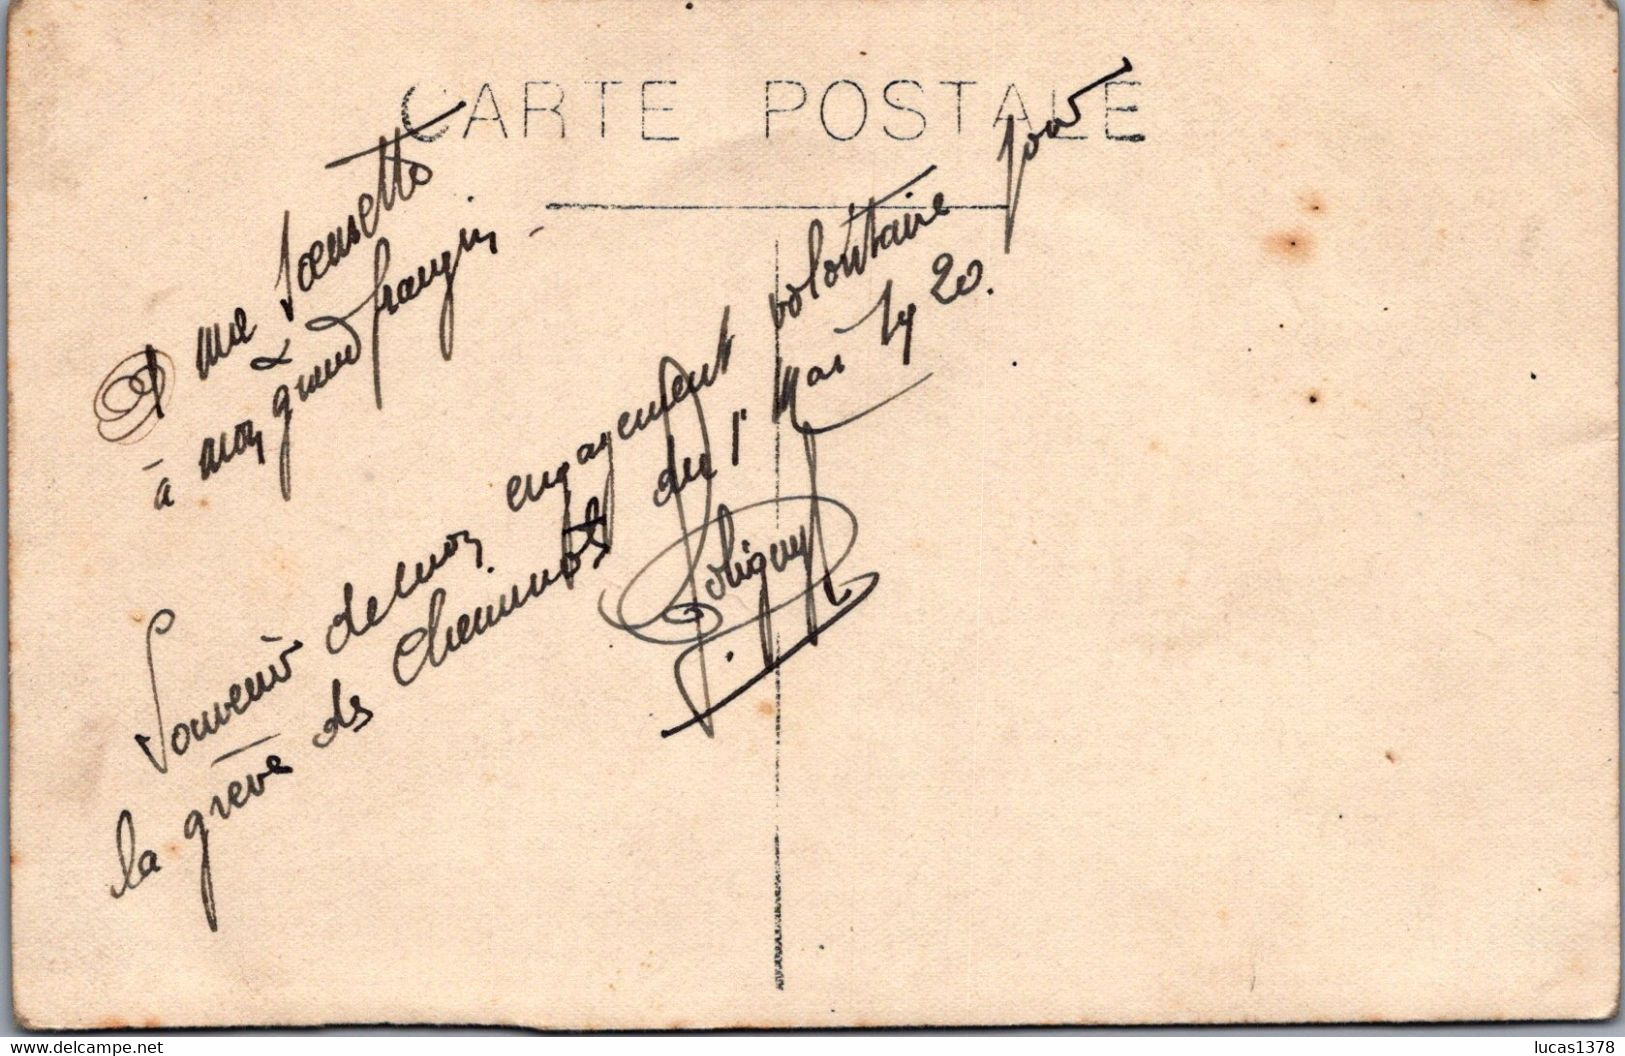 TRES BELLE  CARTE PHOTO / GREVE DES CHEMINOTS 1920 / SOUVENIR ENGAGEMENT VOLONTAIRE - Grèves